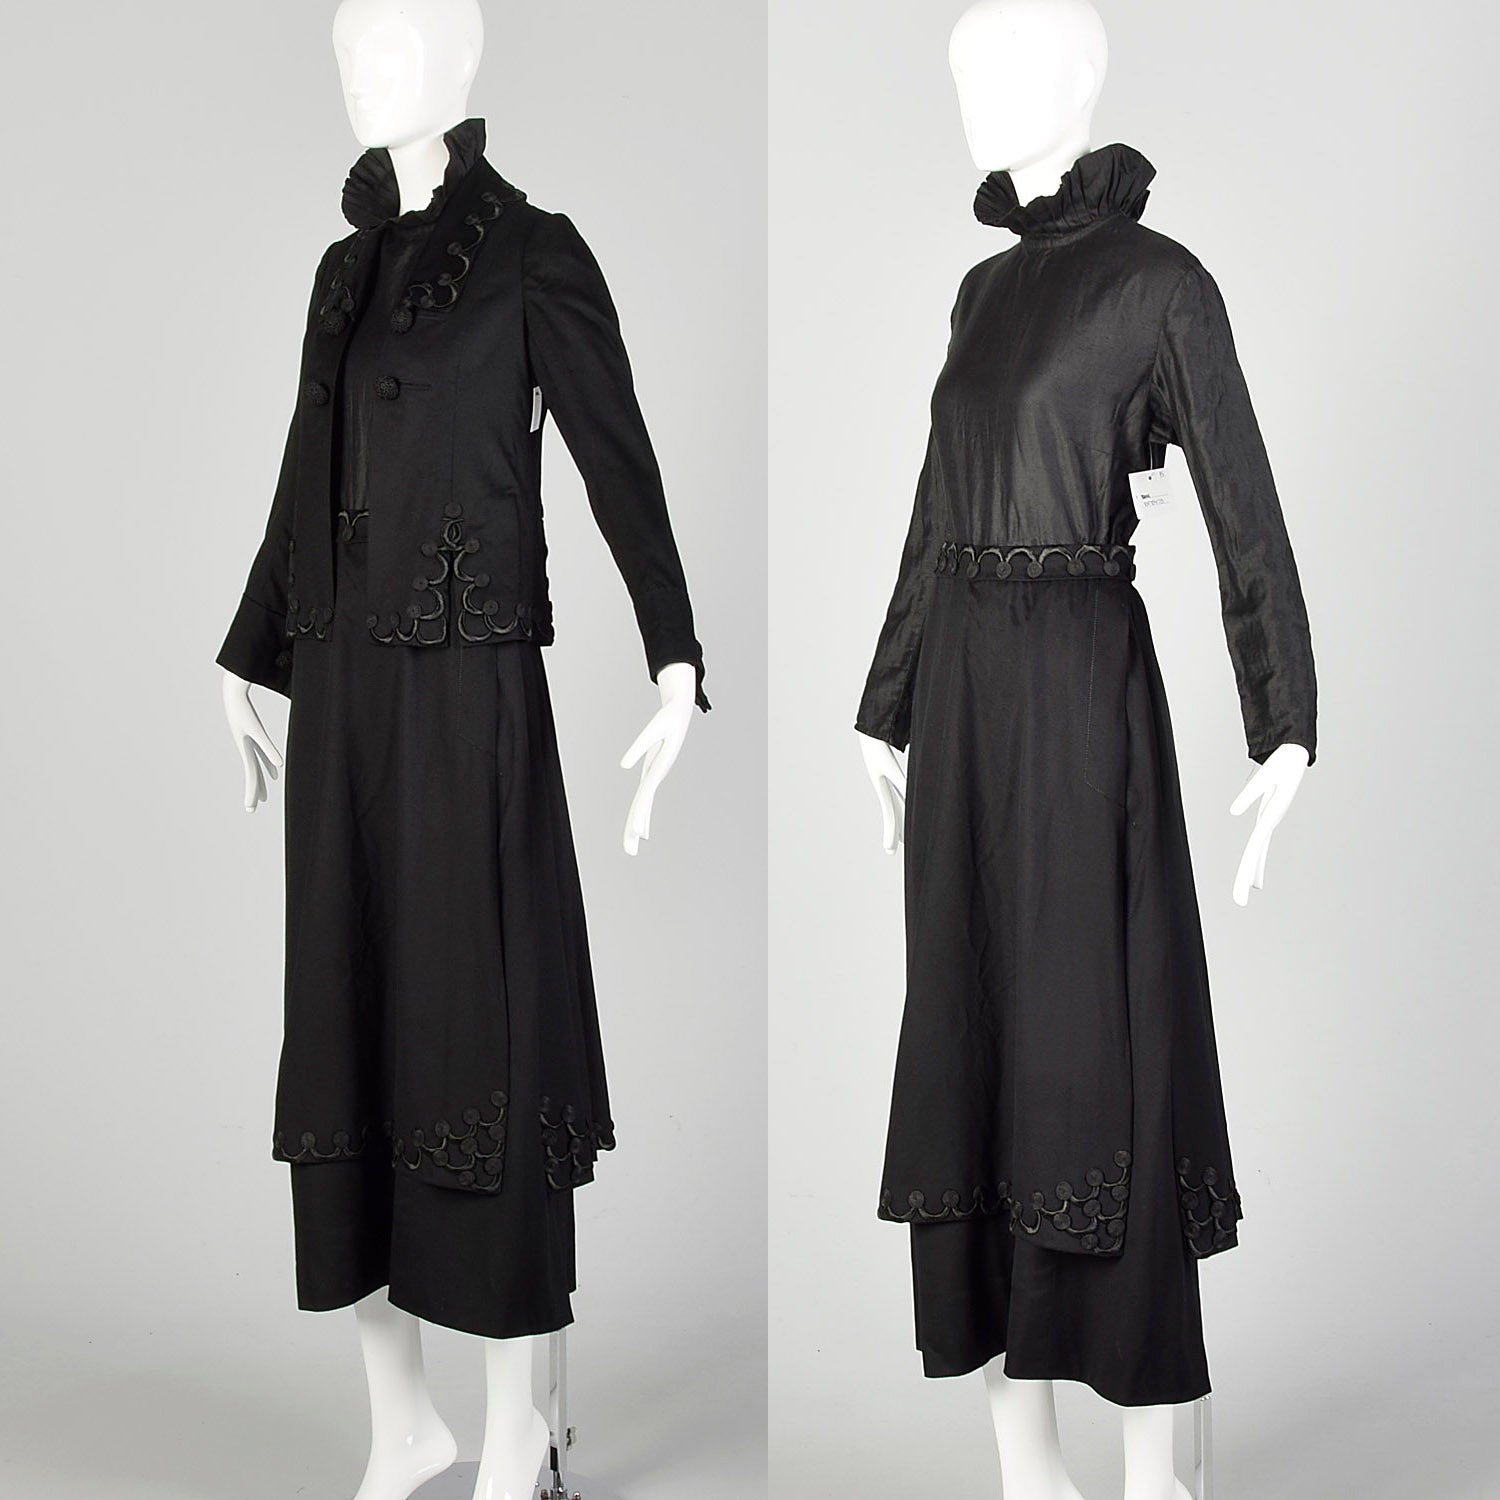 1910s Edwardian Walking Suit Black Wool Cotton Three Piece Ensemble Jacket Blouse Skirt